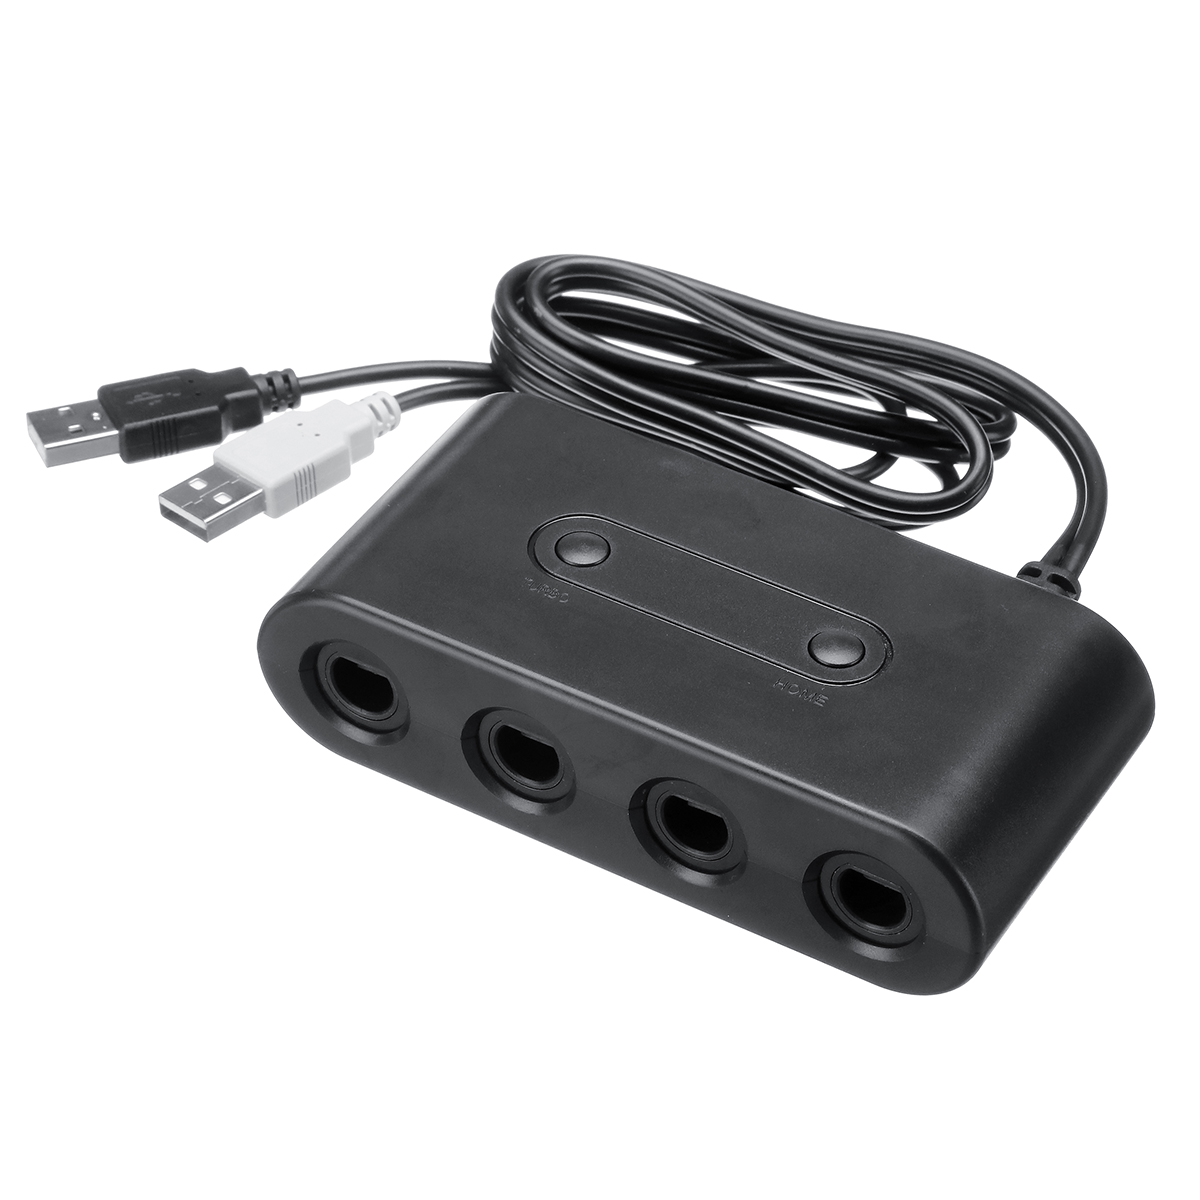 

4 порта Gamecube NGC USB Converter игровой контроллер адаптер для Nintendo Switch Геймпад Wii U ПК